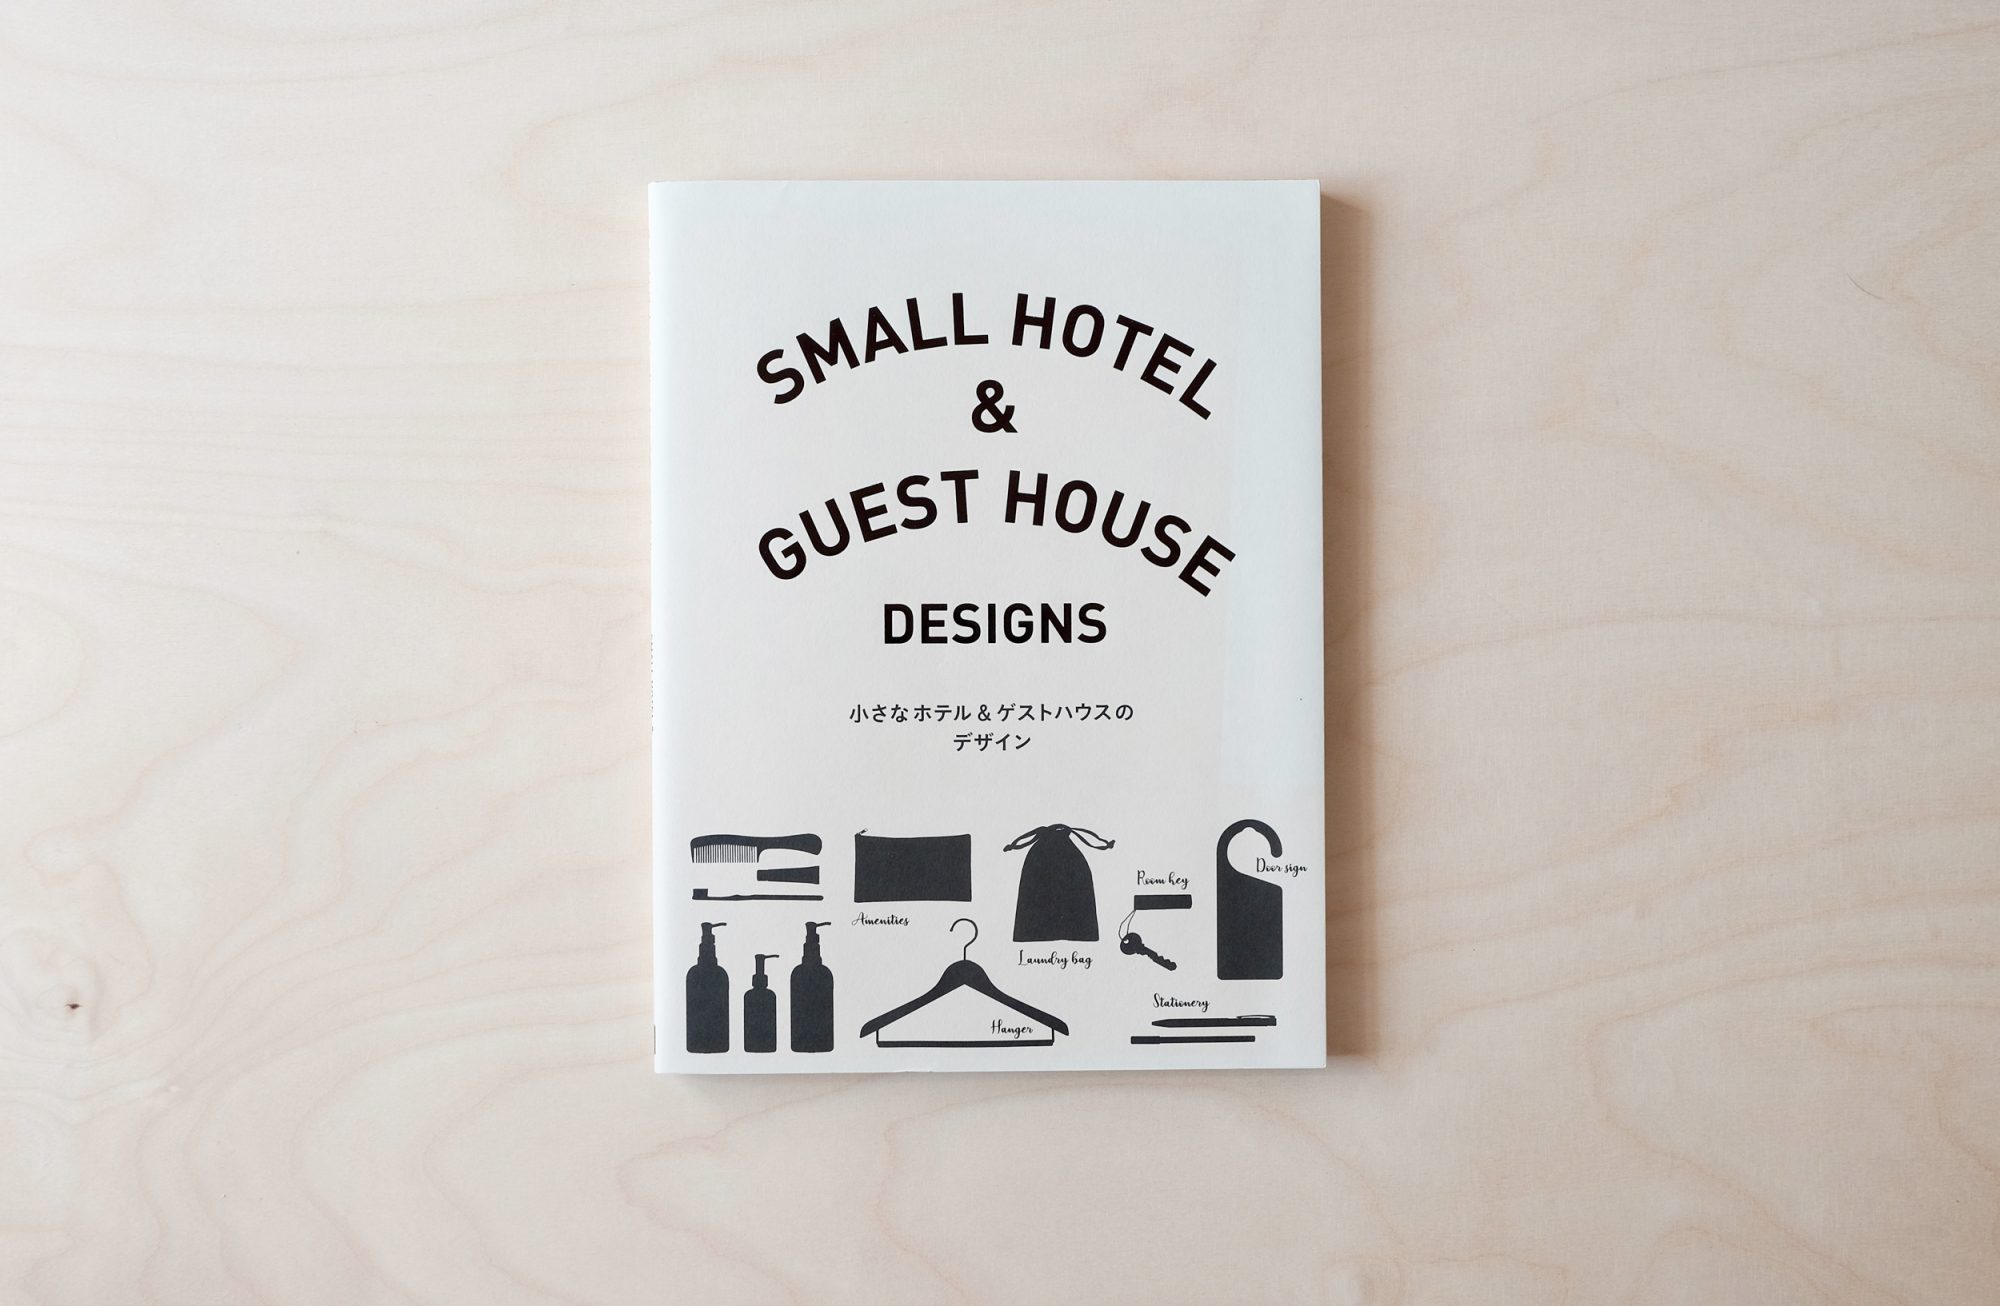 Umschlag einer japanischen Ausgabe eines Buches über charmante Hotels mit modernem Design. 